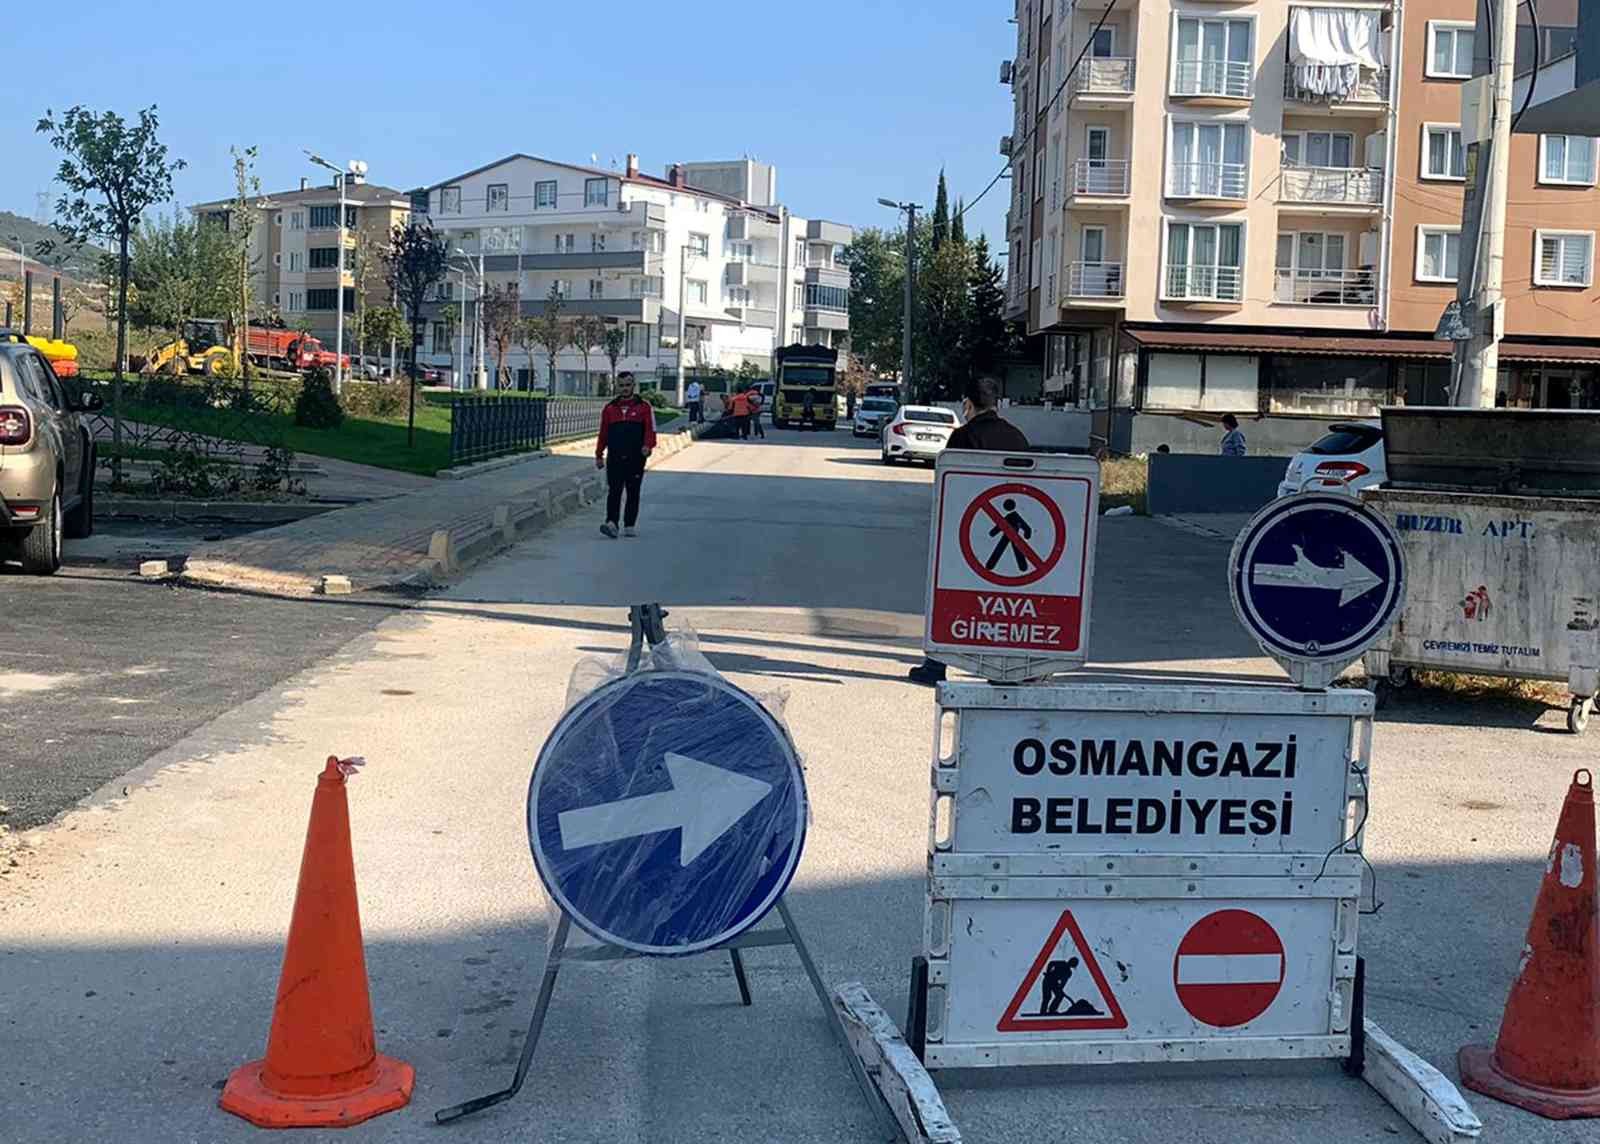 Osmangazi’de bozulan yollar asfaltla yenileniyor #bursa